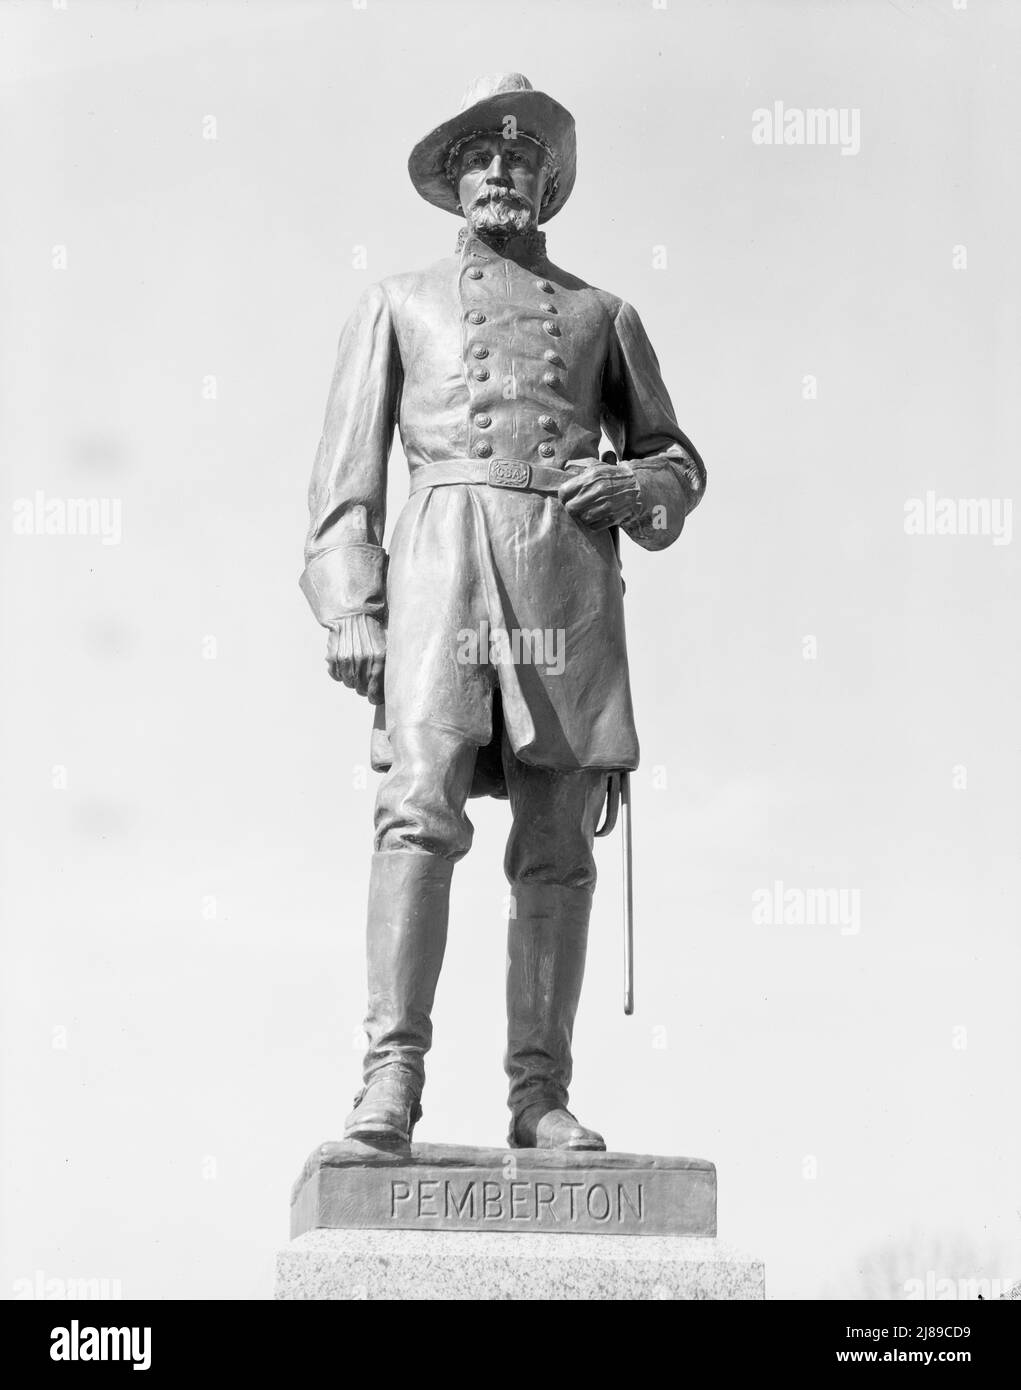 Vicksburg Schlachtfeld Denkmal. Mississippi. [Die LT. General John C. Pemberton Statue von Edmond T. Quinn wurde 1917 in Vicksburg errichtet. Pemberton war der kommandierende Offizier während der Kapitulation der Konföderierten bei der Belagerung von Vicksburg im Jahr 1863]. Stockfoto